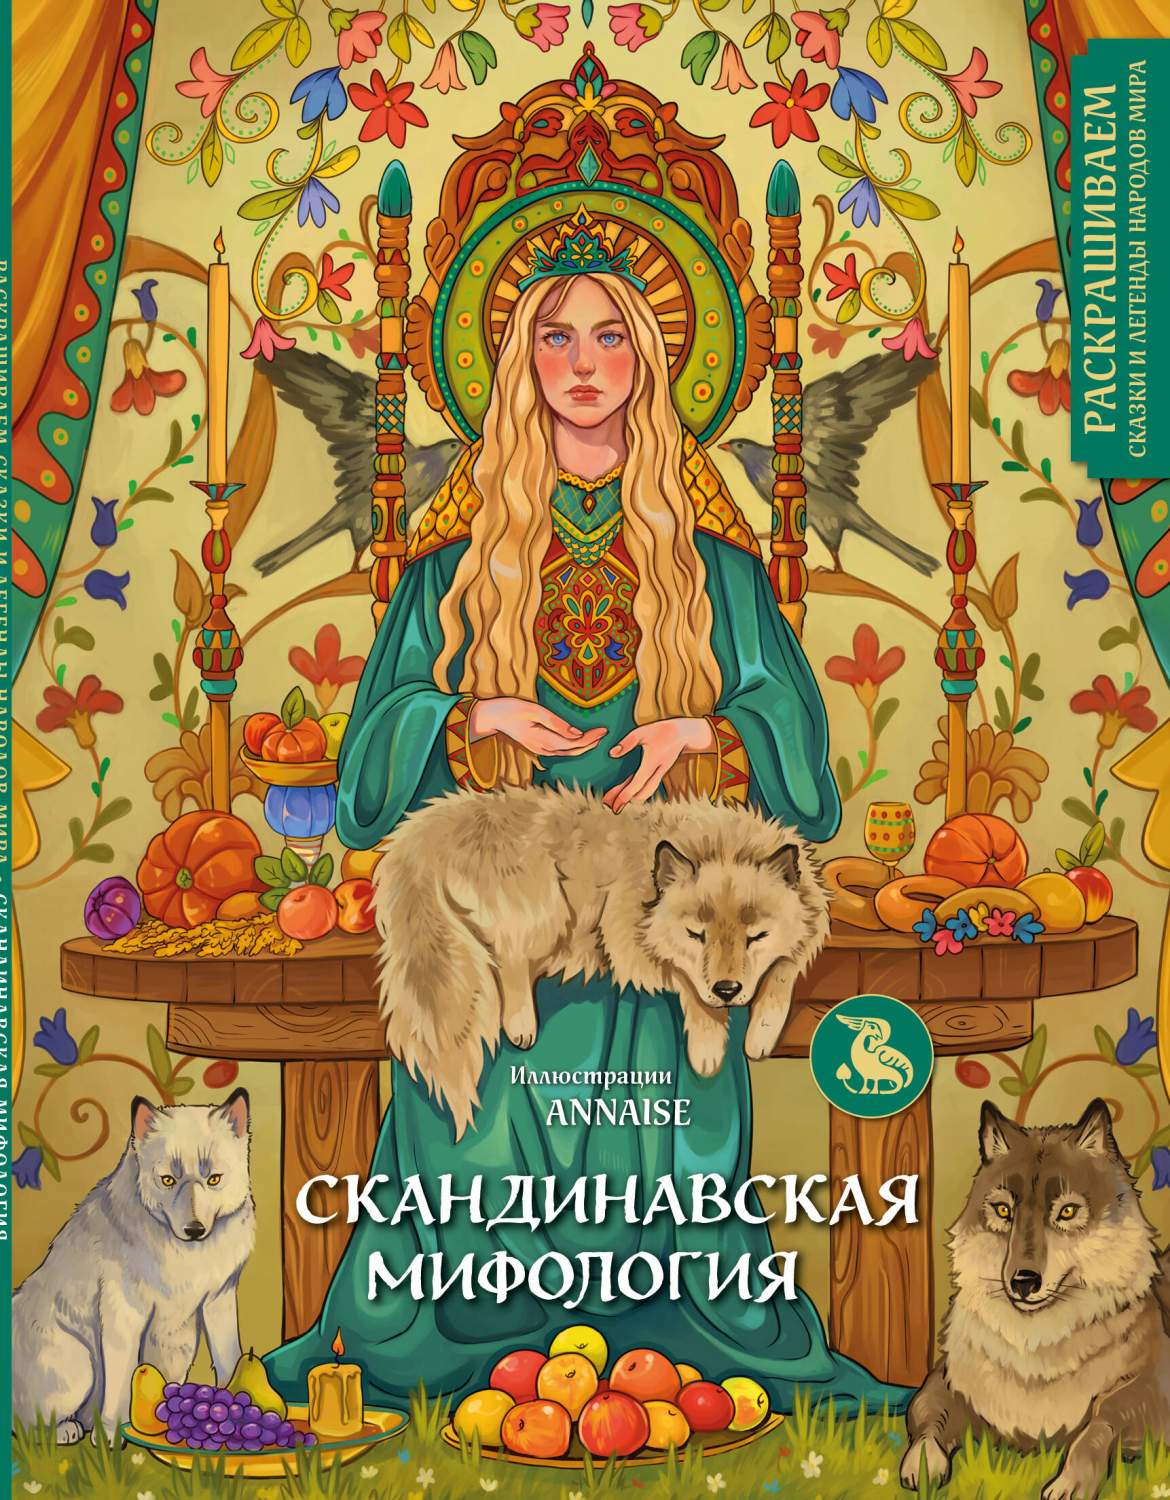 Волшебные поделки на тему русских сказок